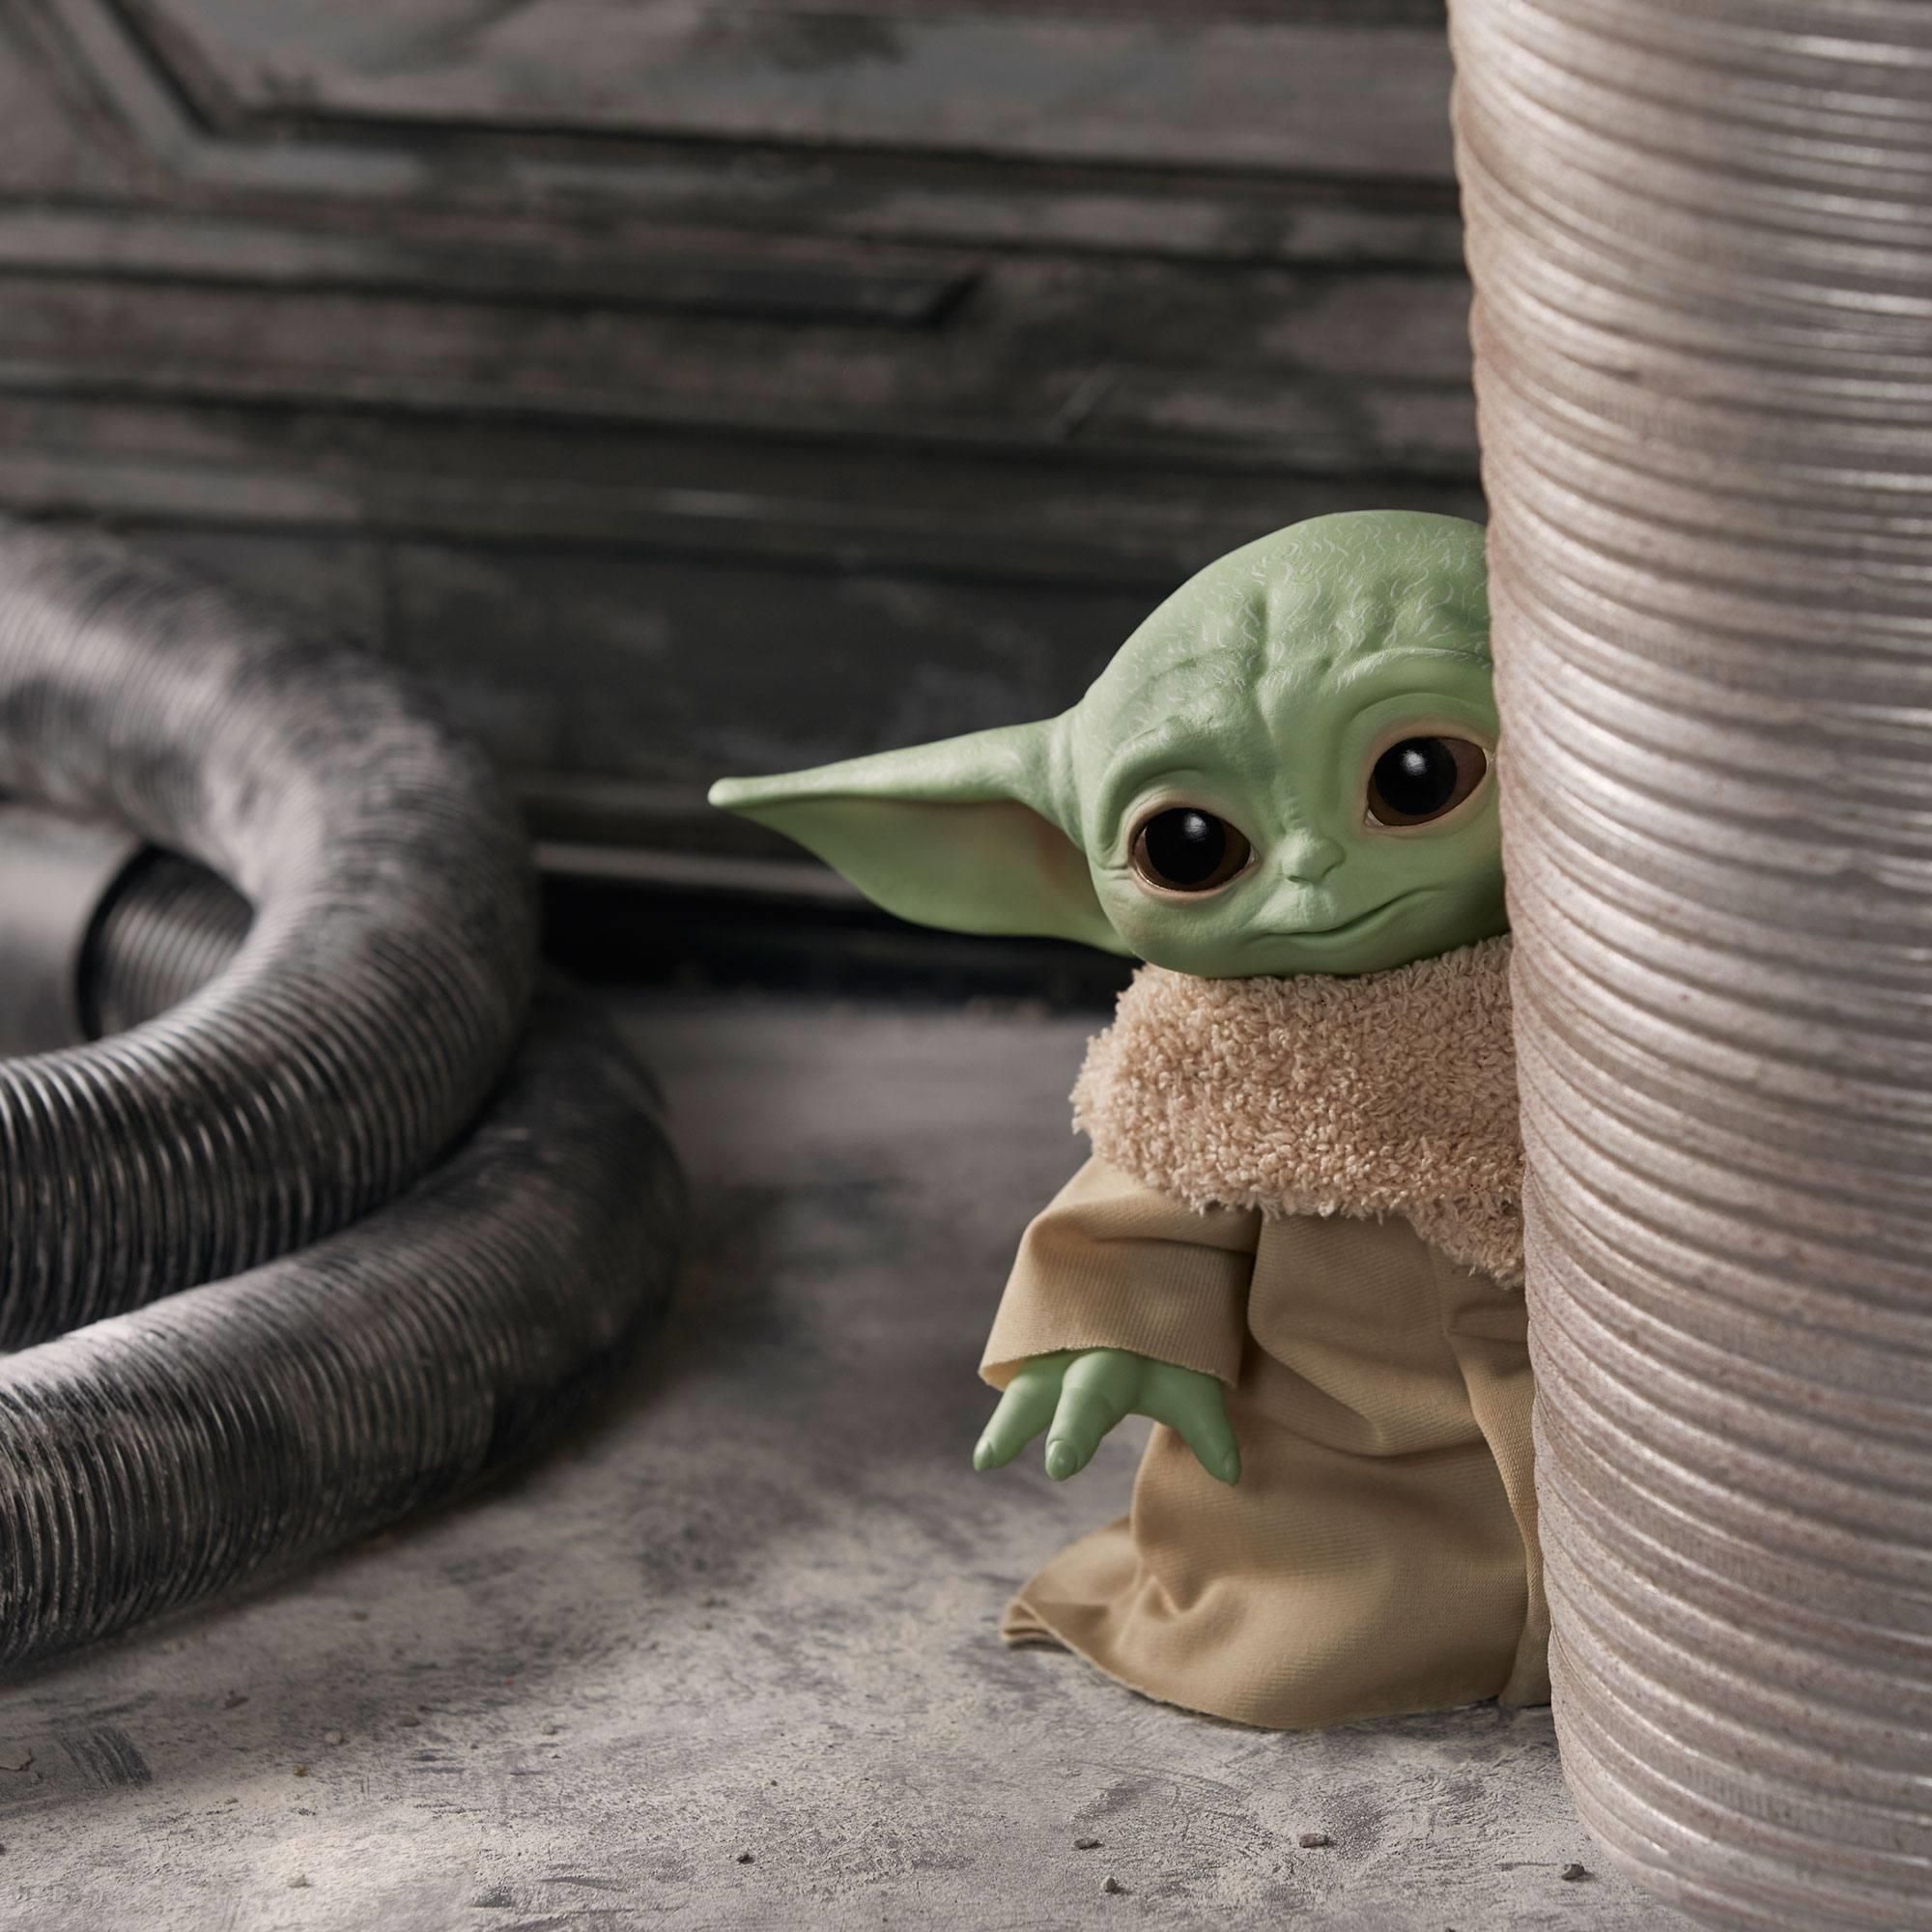 Hasbro Star Wars The Child Talking Plush Toy Baby Yoda F1115